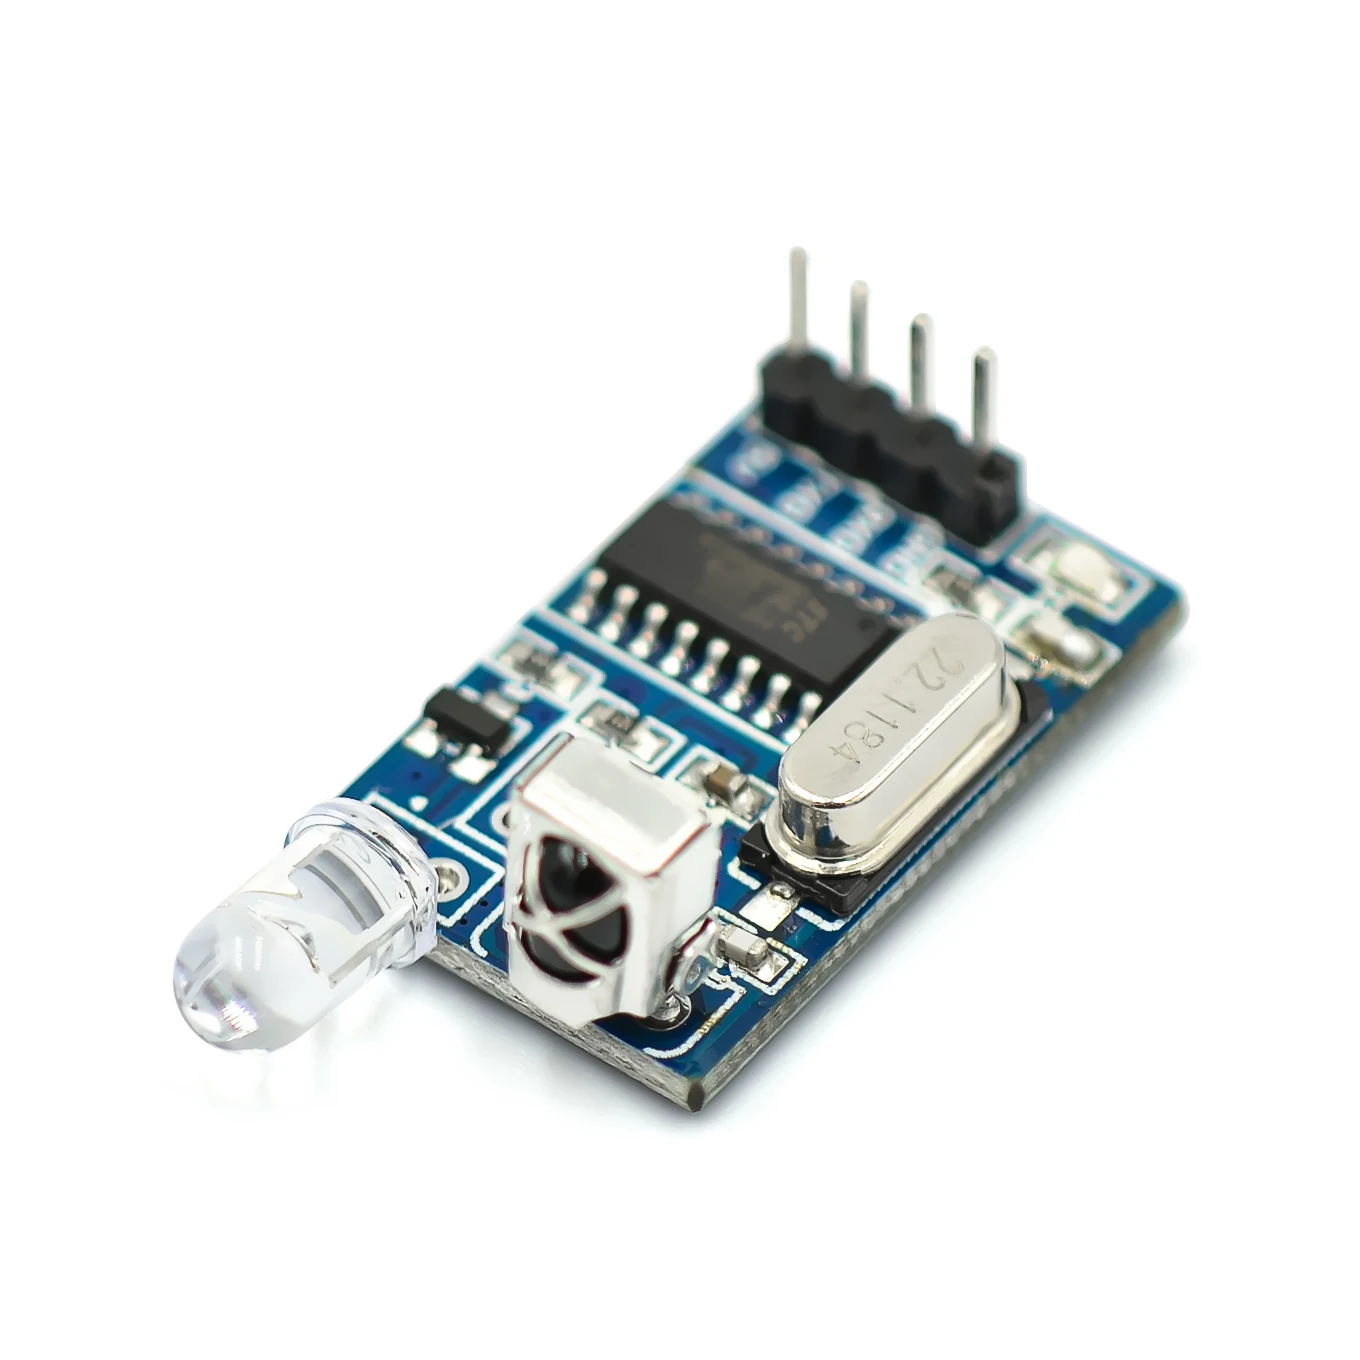 Инфракрасный ресивер-передатчик с ИК-подсветкой 5 В беспроводной модуль для arduino |